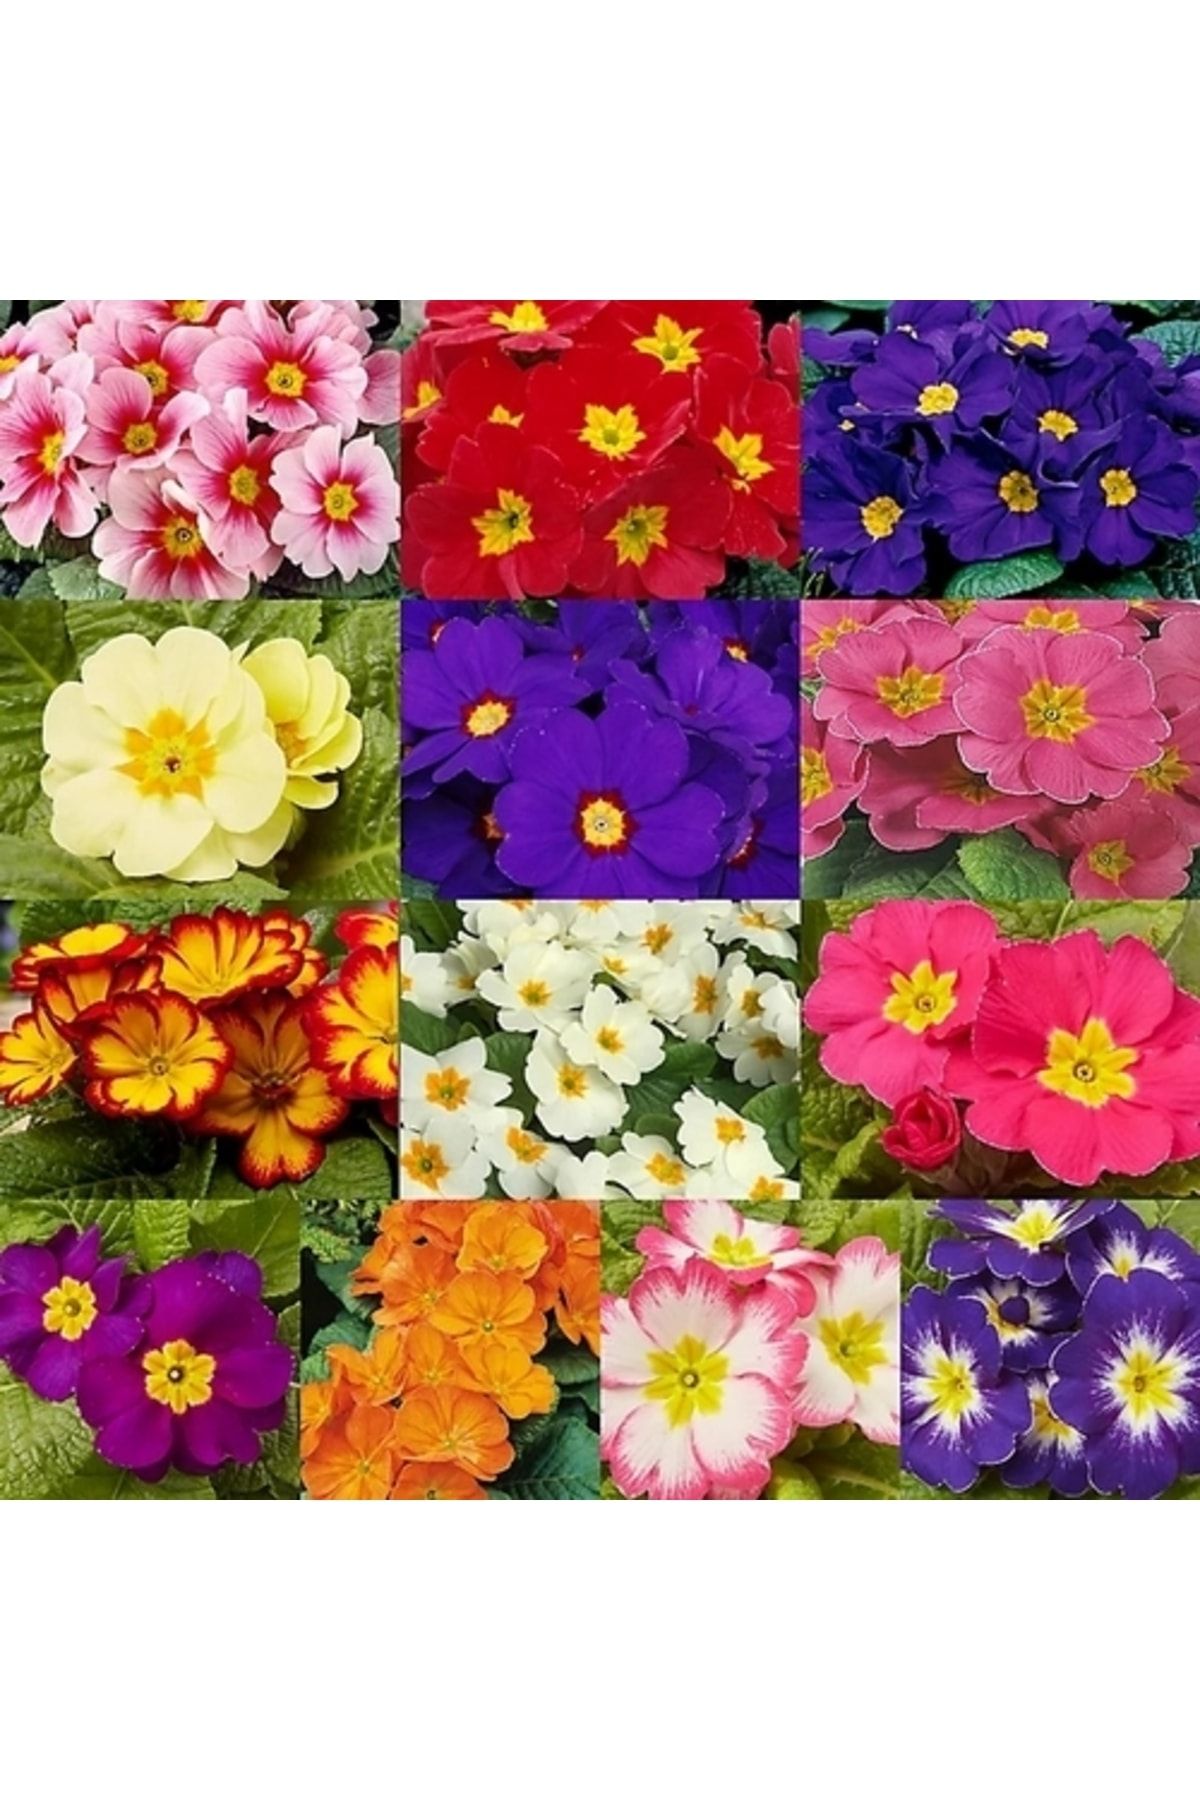 Day 100 Adet 10 Farklı Renk Primula Çiçek Tohumu + 10 Adet Hediye K.renk Zambak Çiçek Tohumu